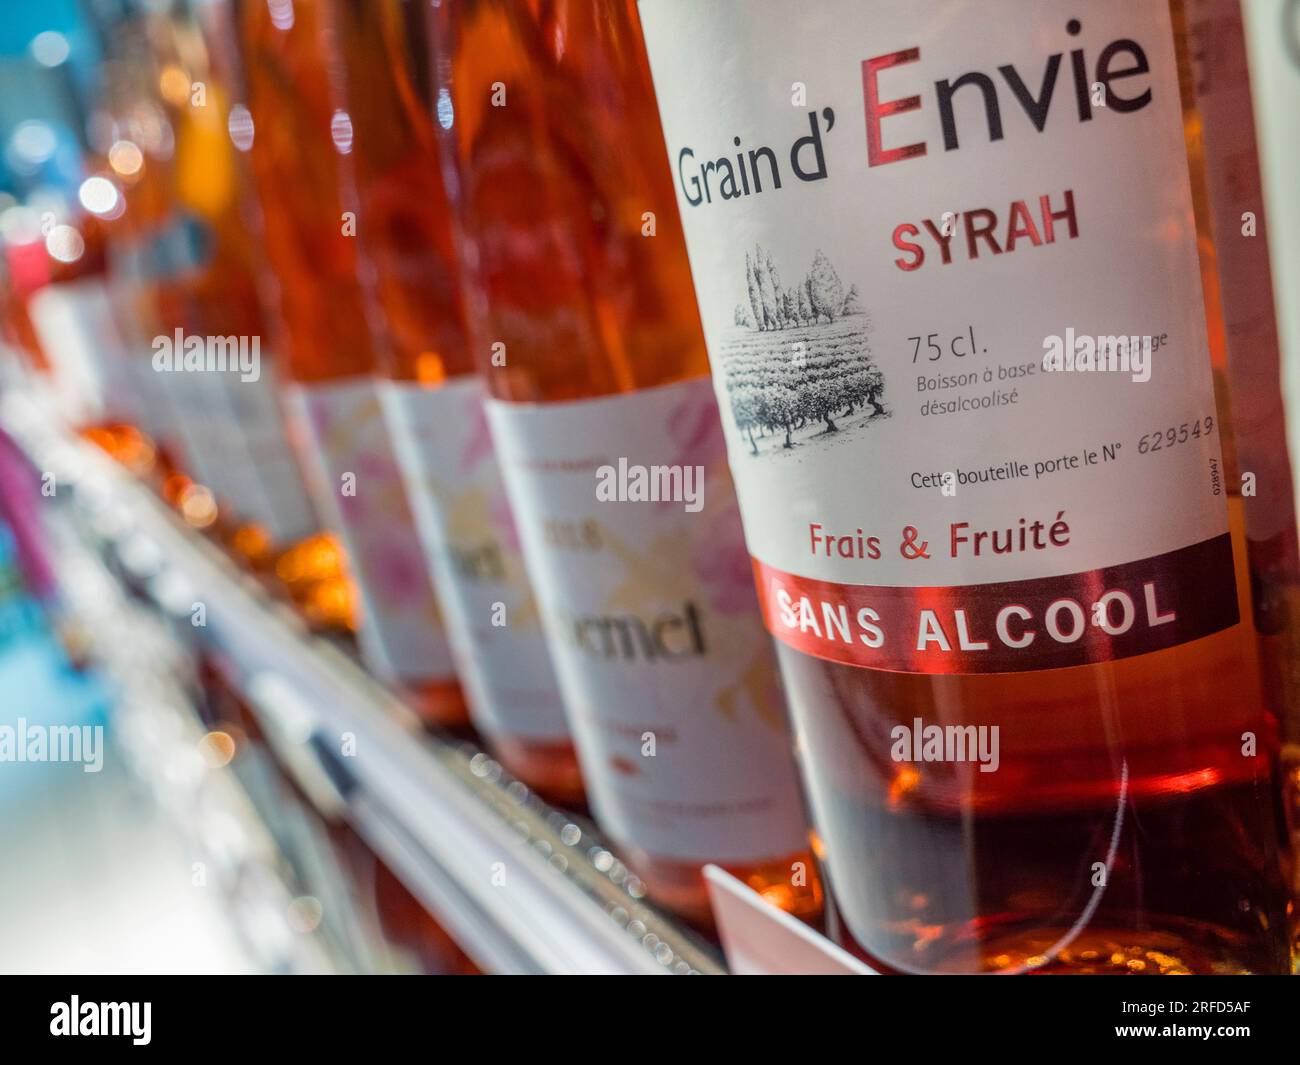 Vino, alcool, Syrah Grain d'Envie 75, bottiglia di vino "SANS ALCOHOL" e etichetta sullo scaffale in un negozio di vini francese Foto Stock